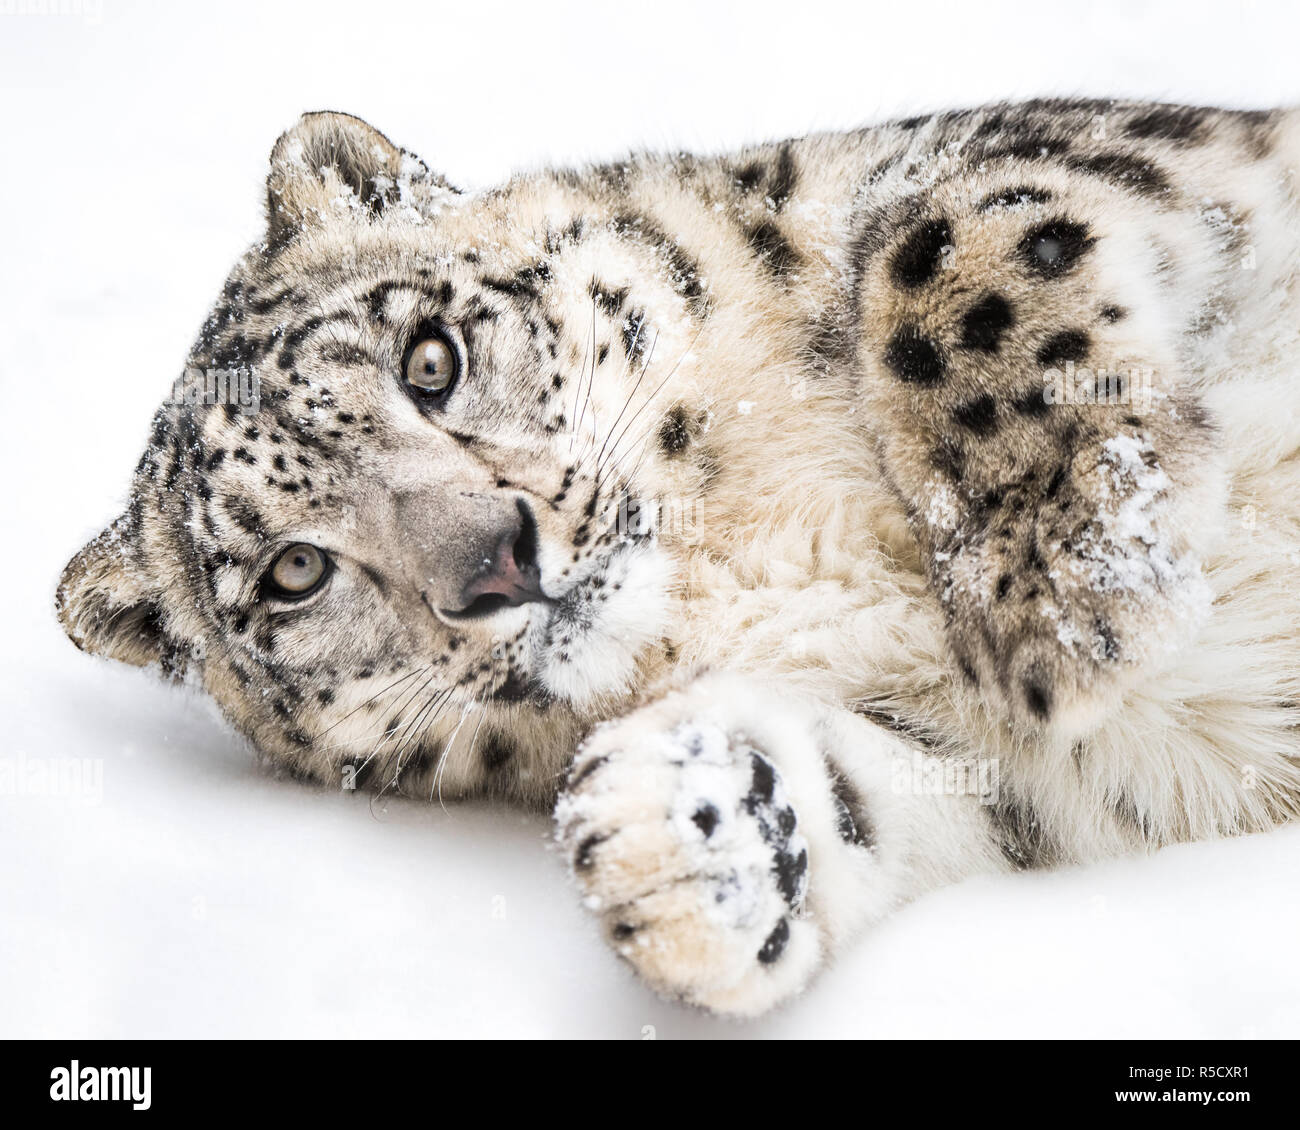 Snow Leopard v ludique Banque D'Images